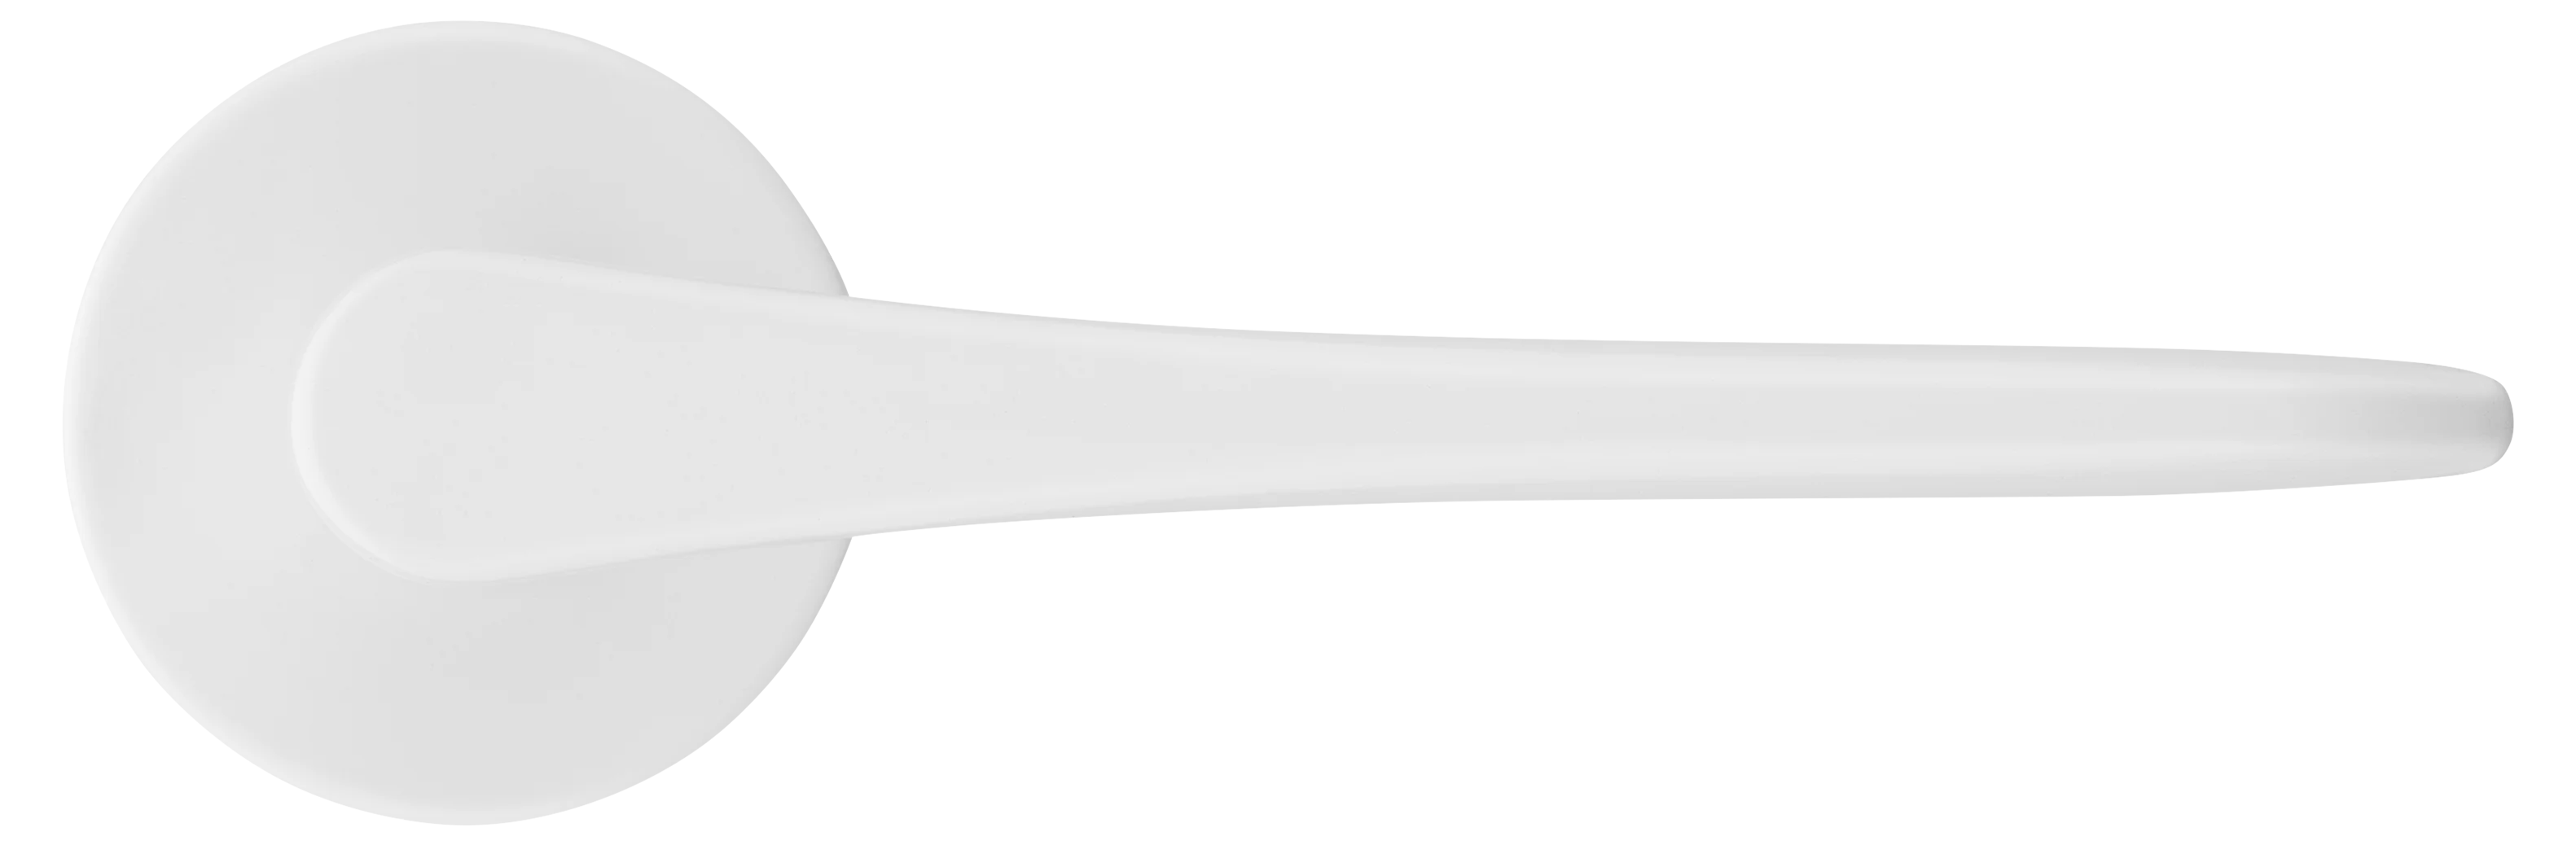 AULA R5 BIA, ручка дверная на розетке 7мм, цвет -  белый фото купить в Уфе